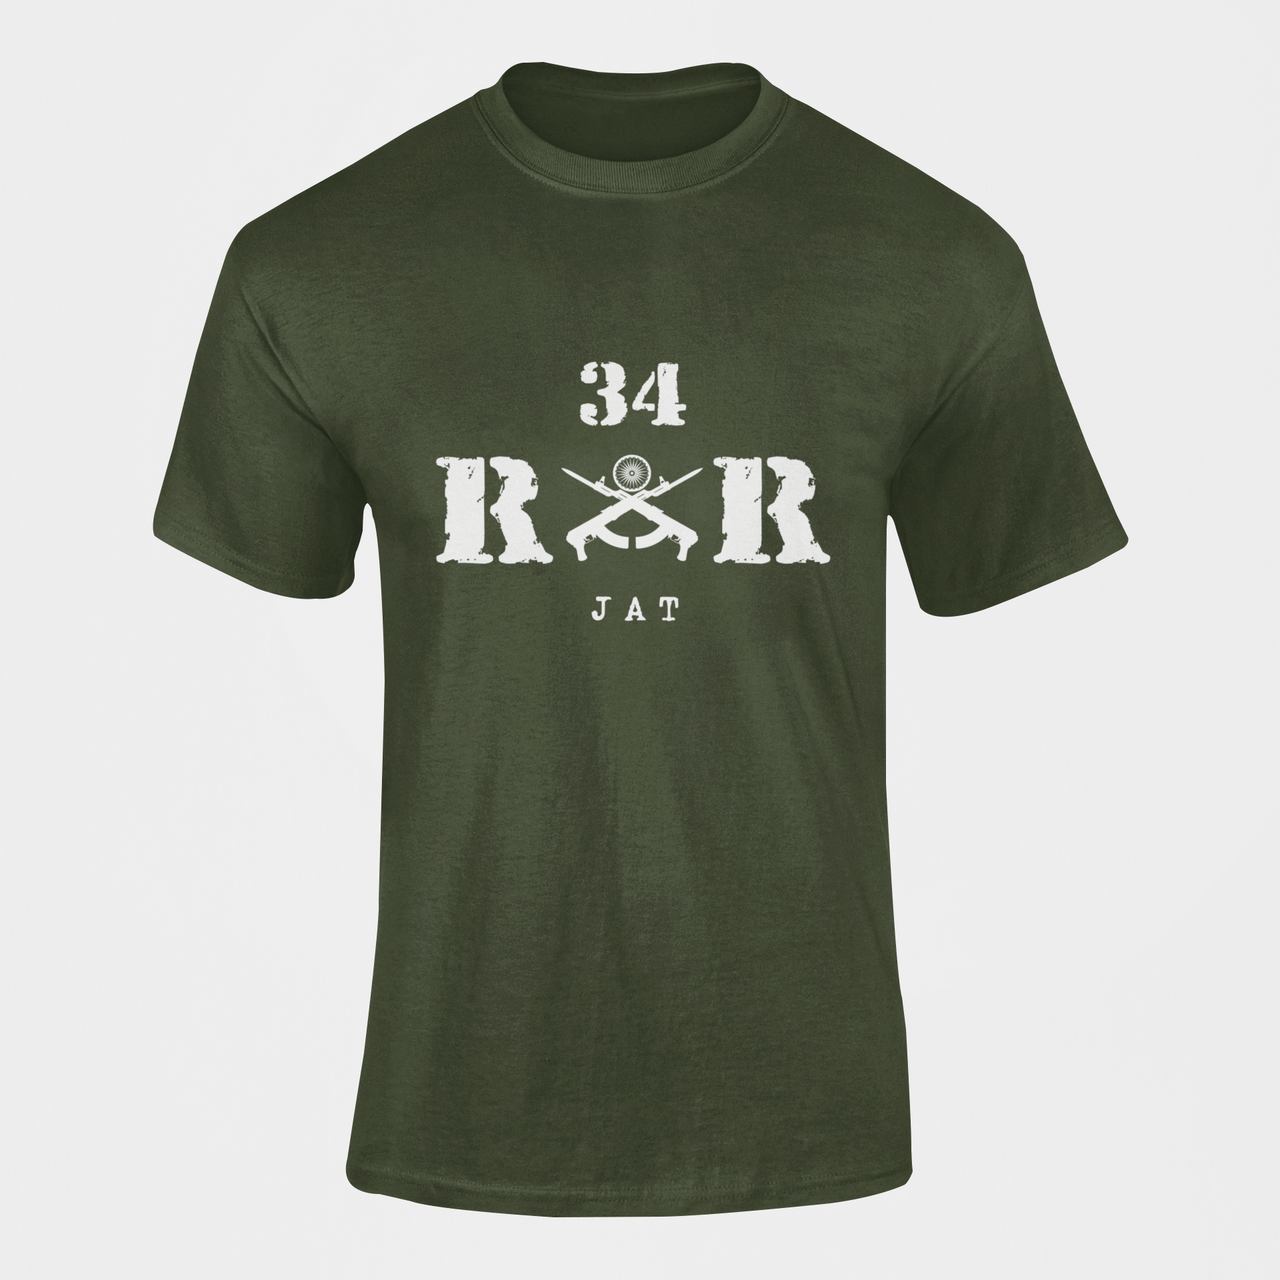 Rashtriya Rifles T-shirt - 34 RR Jat (Men)